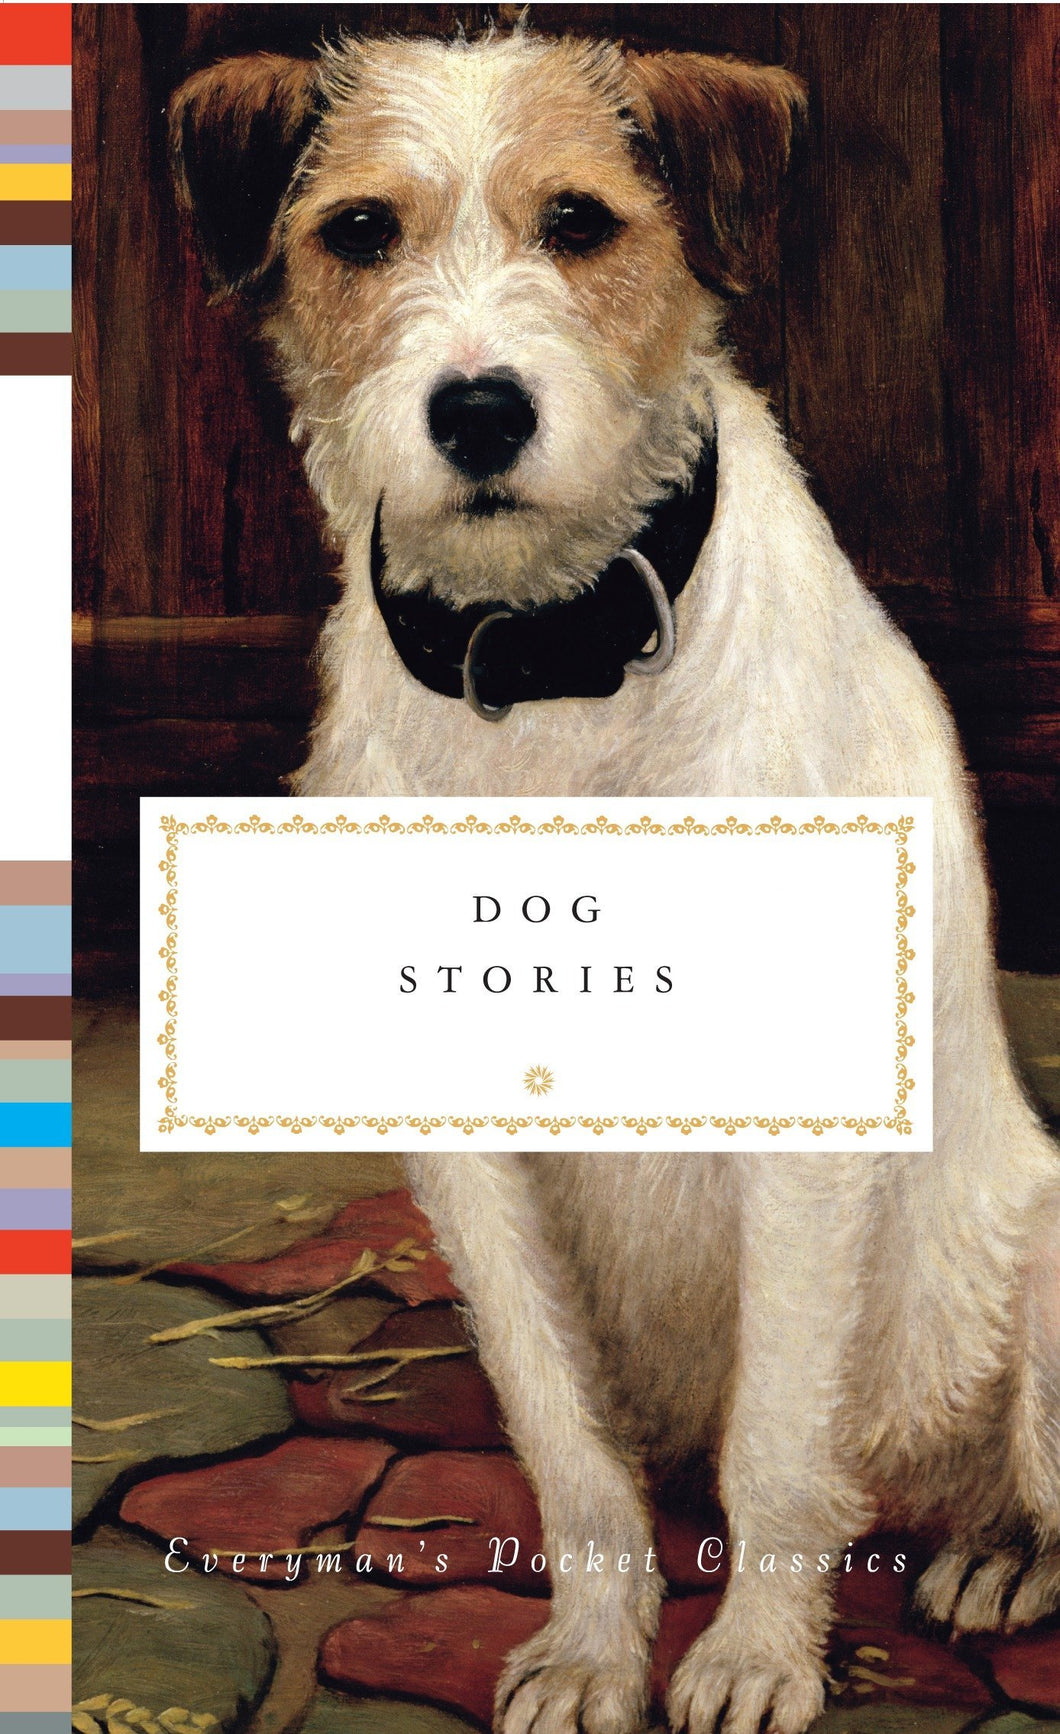 Dog Stories ร้านหนังสือและสิ่งของ เป็นร้านหนังสือภาษาอังกฤษหายาก และร้านกาแฟ หรือ บุ๊คคาเฟ่ ตั้งอยู่สุขุมวิท กรุงเทพ